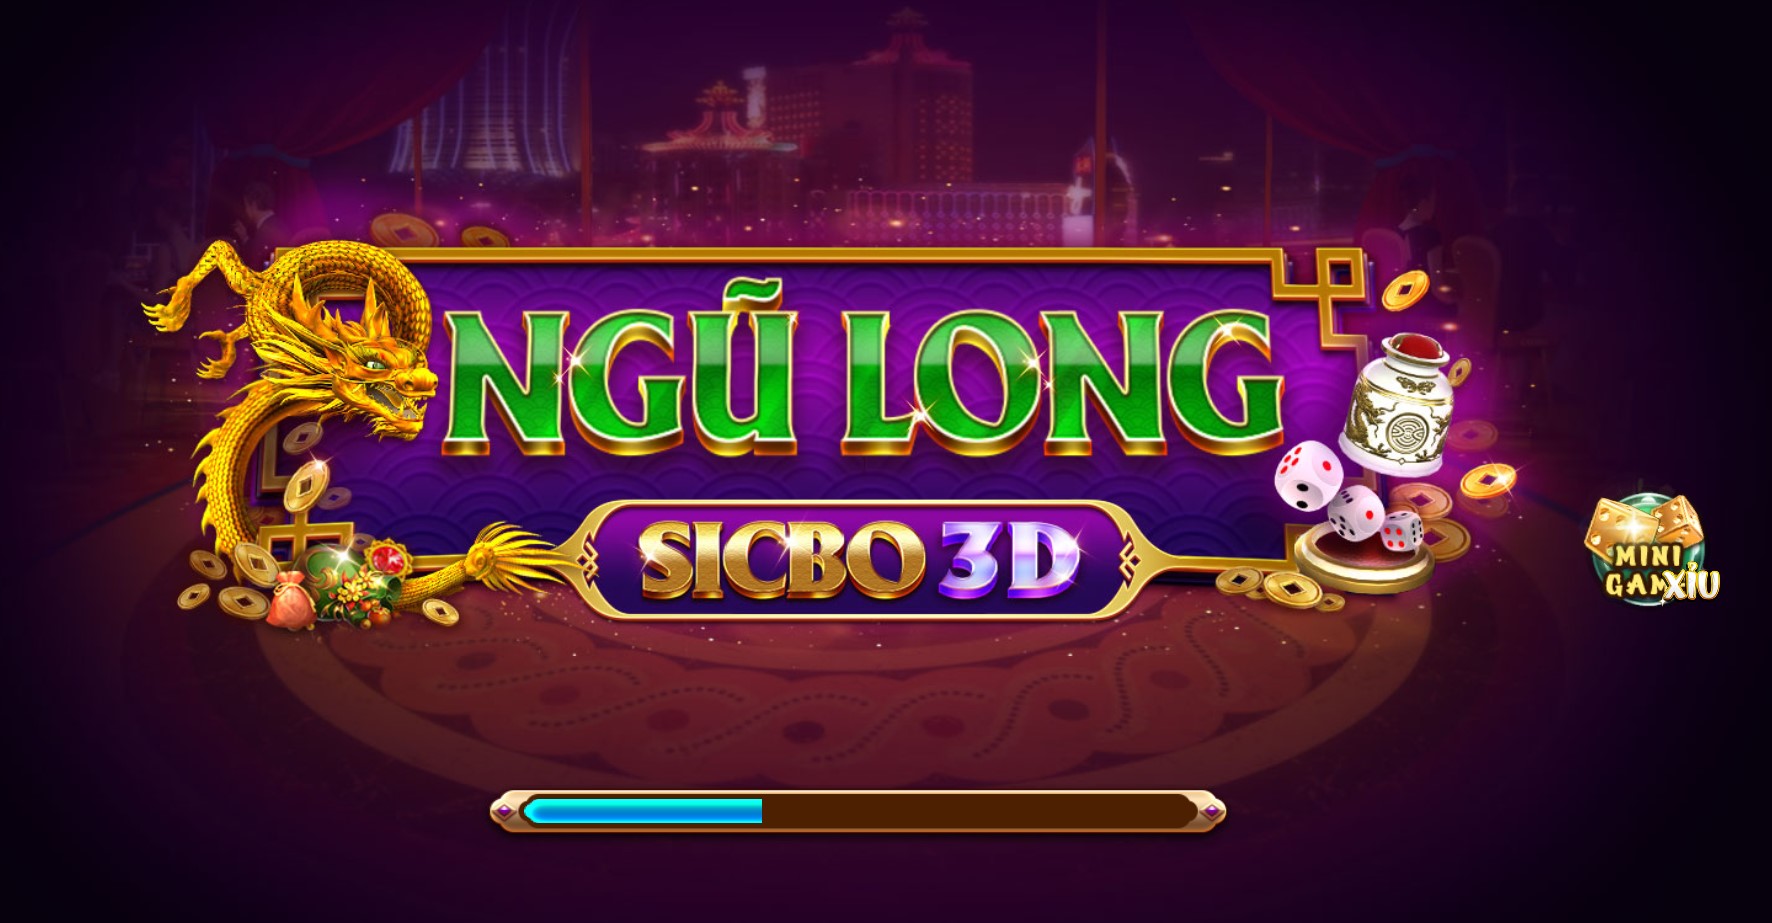 Các kiểu cược trong game Ngũ Long Sicbo 3D Iwin